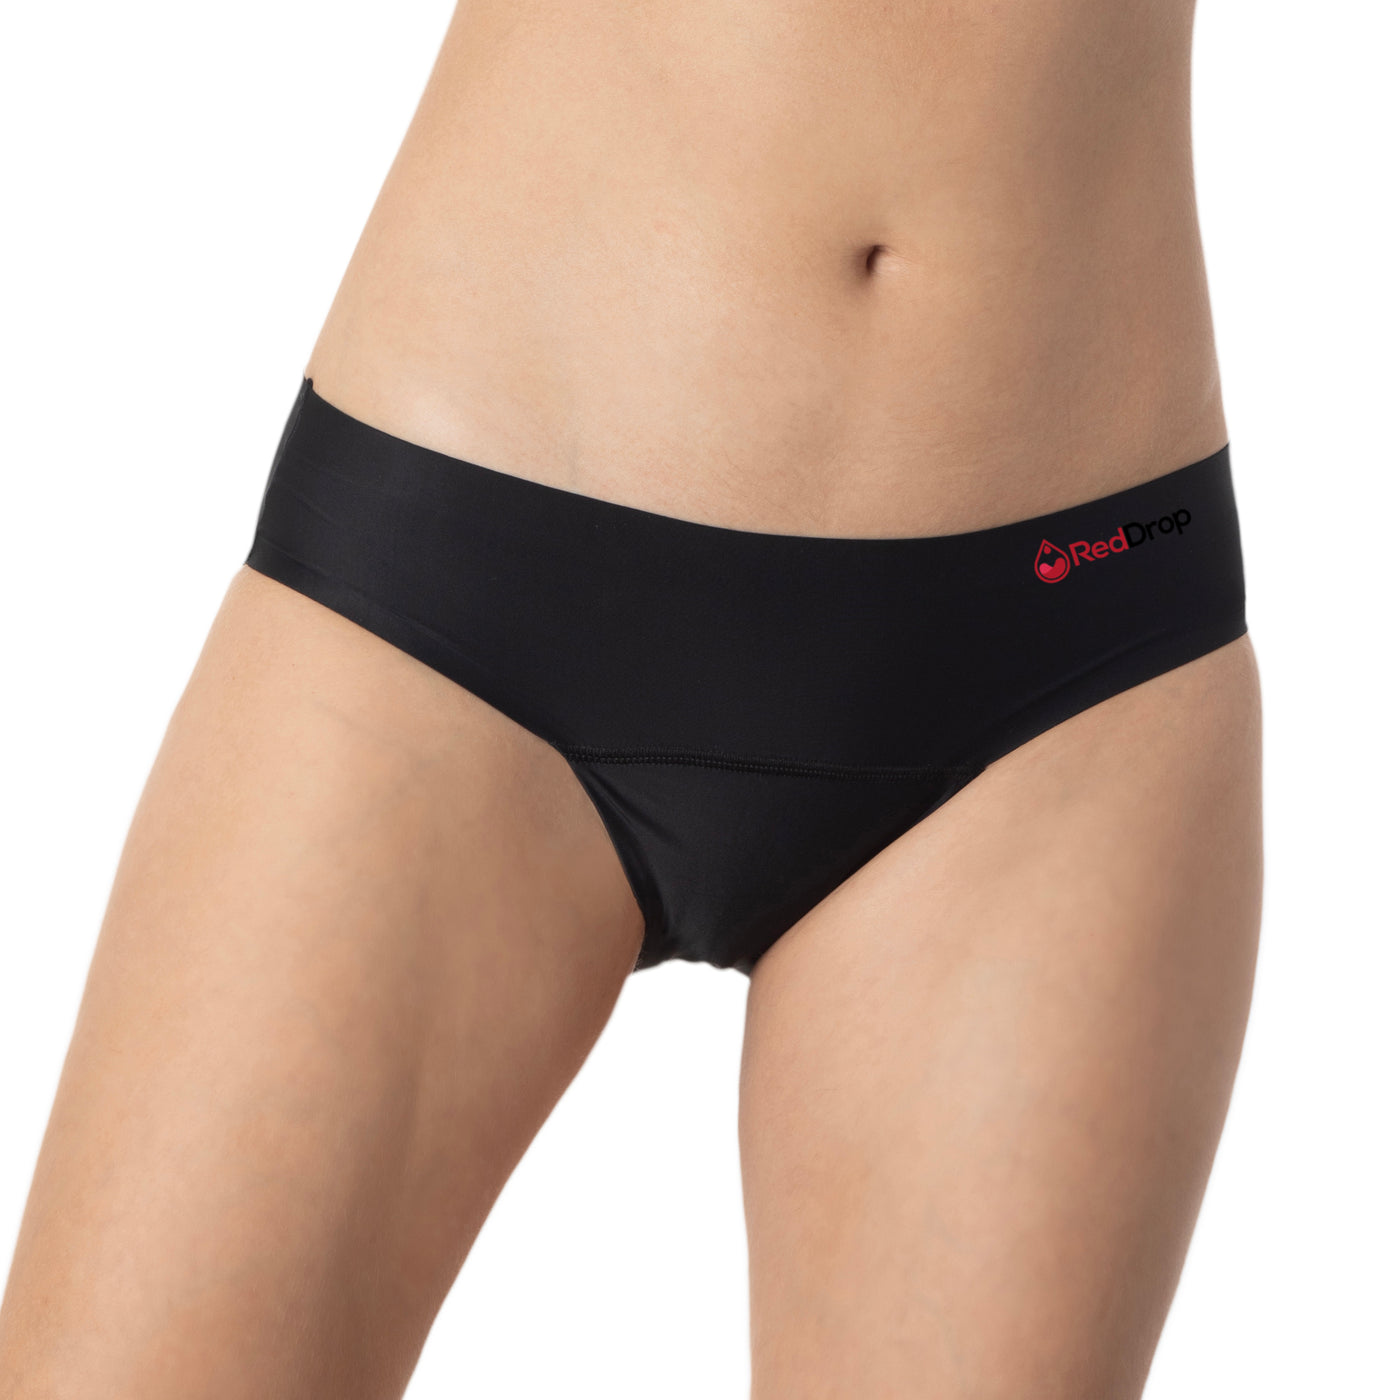 Black Period Underwear - Single Pair